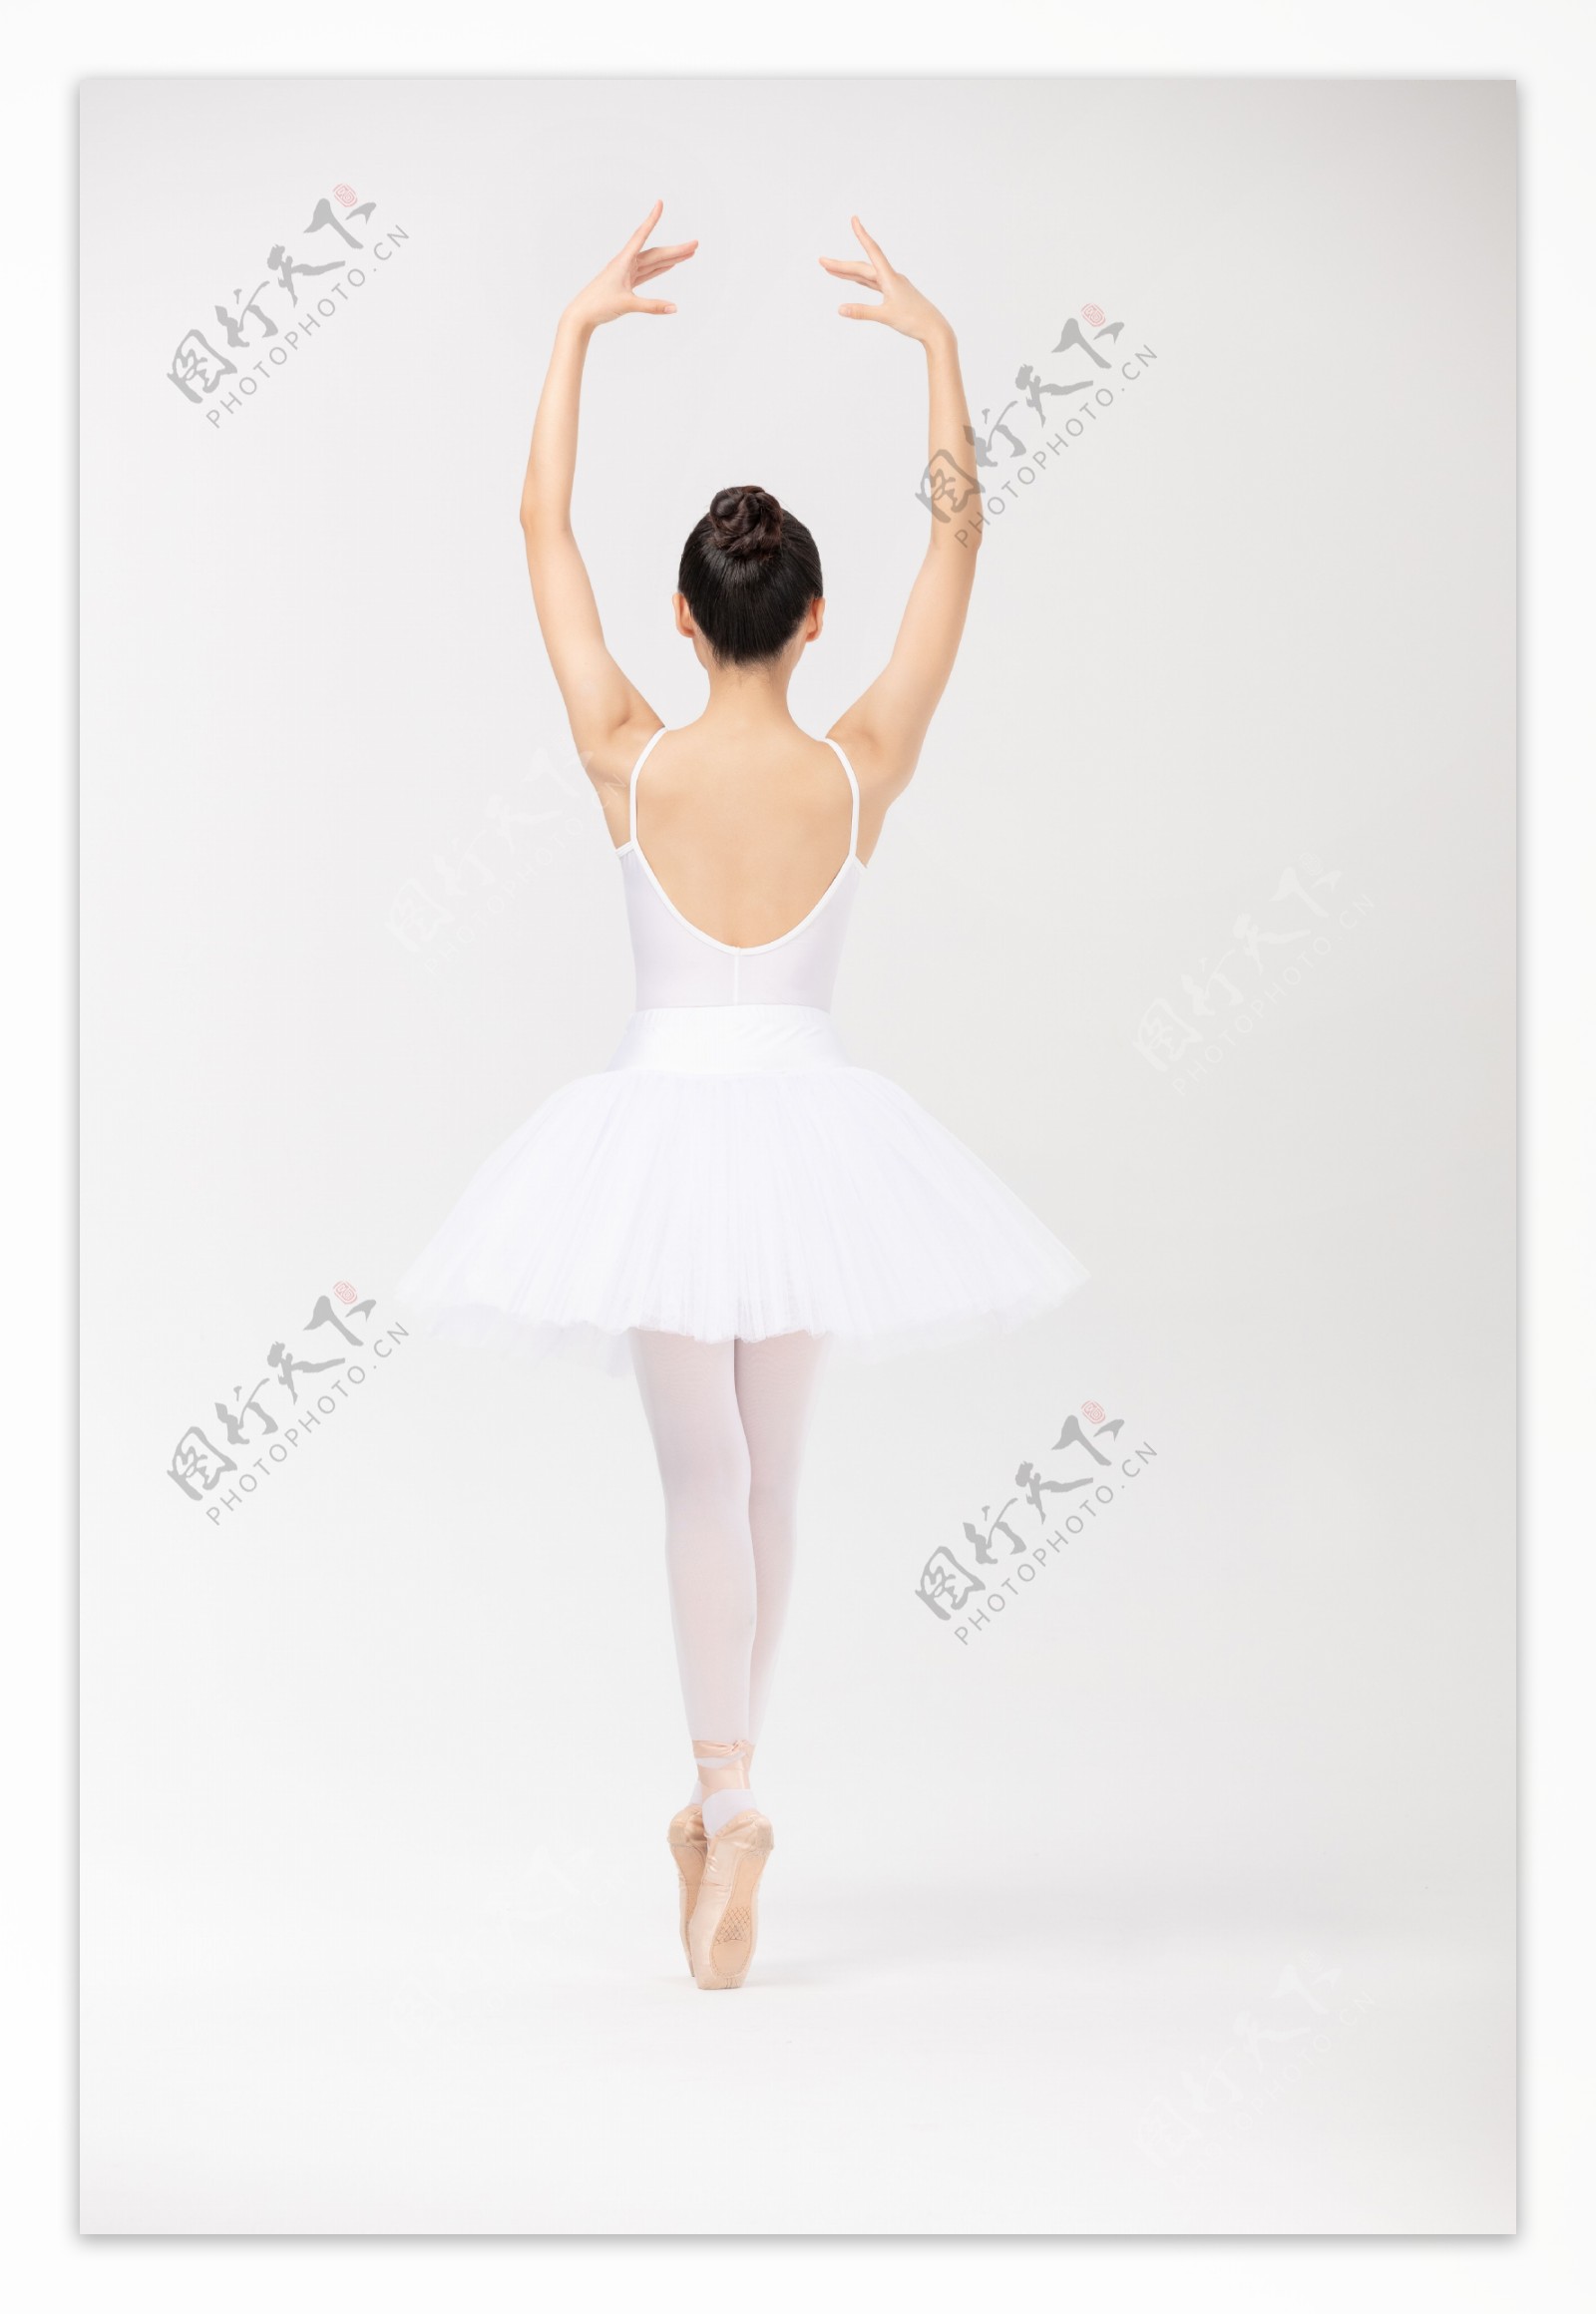 芭蕾女性人物舞蹈背景素材